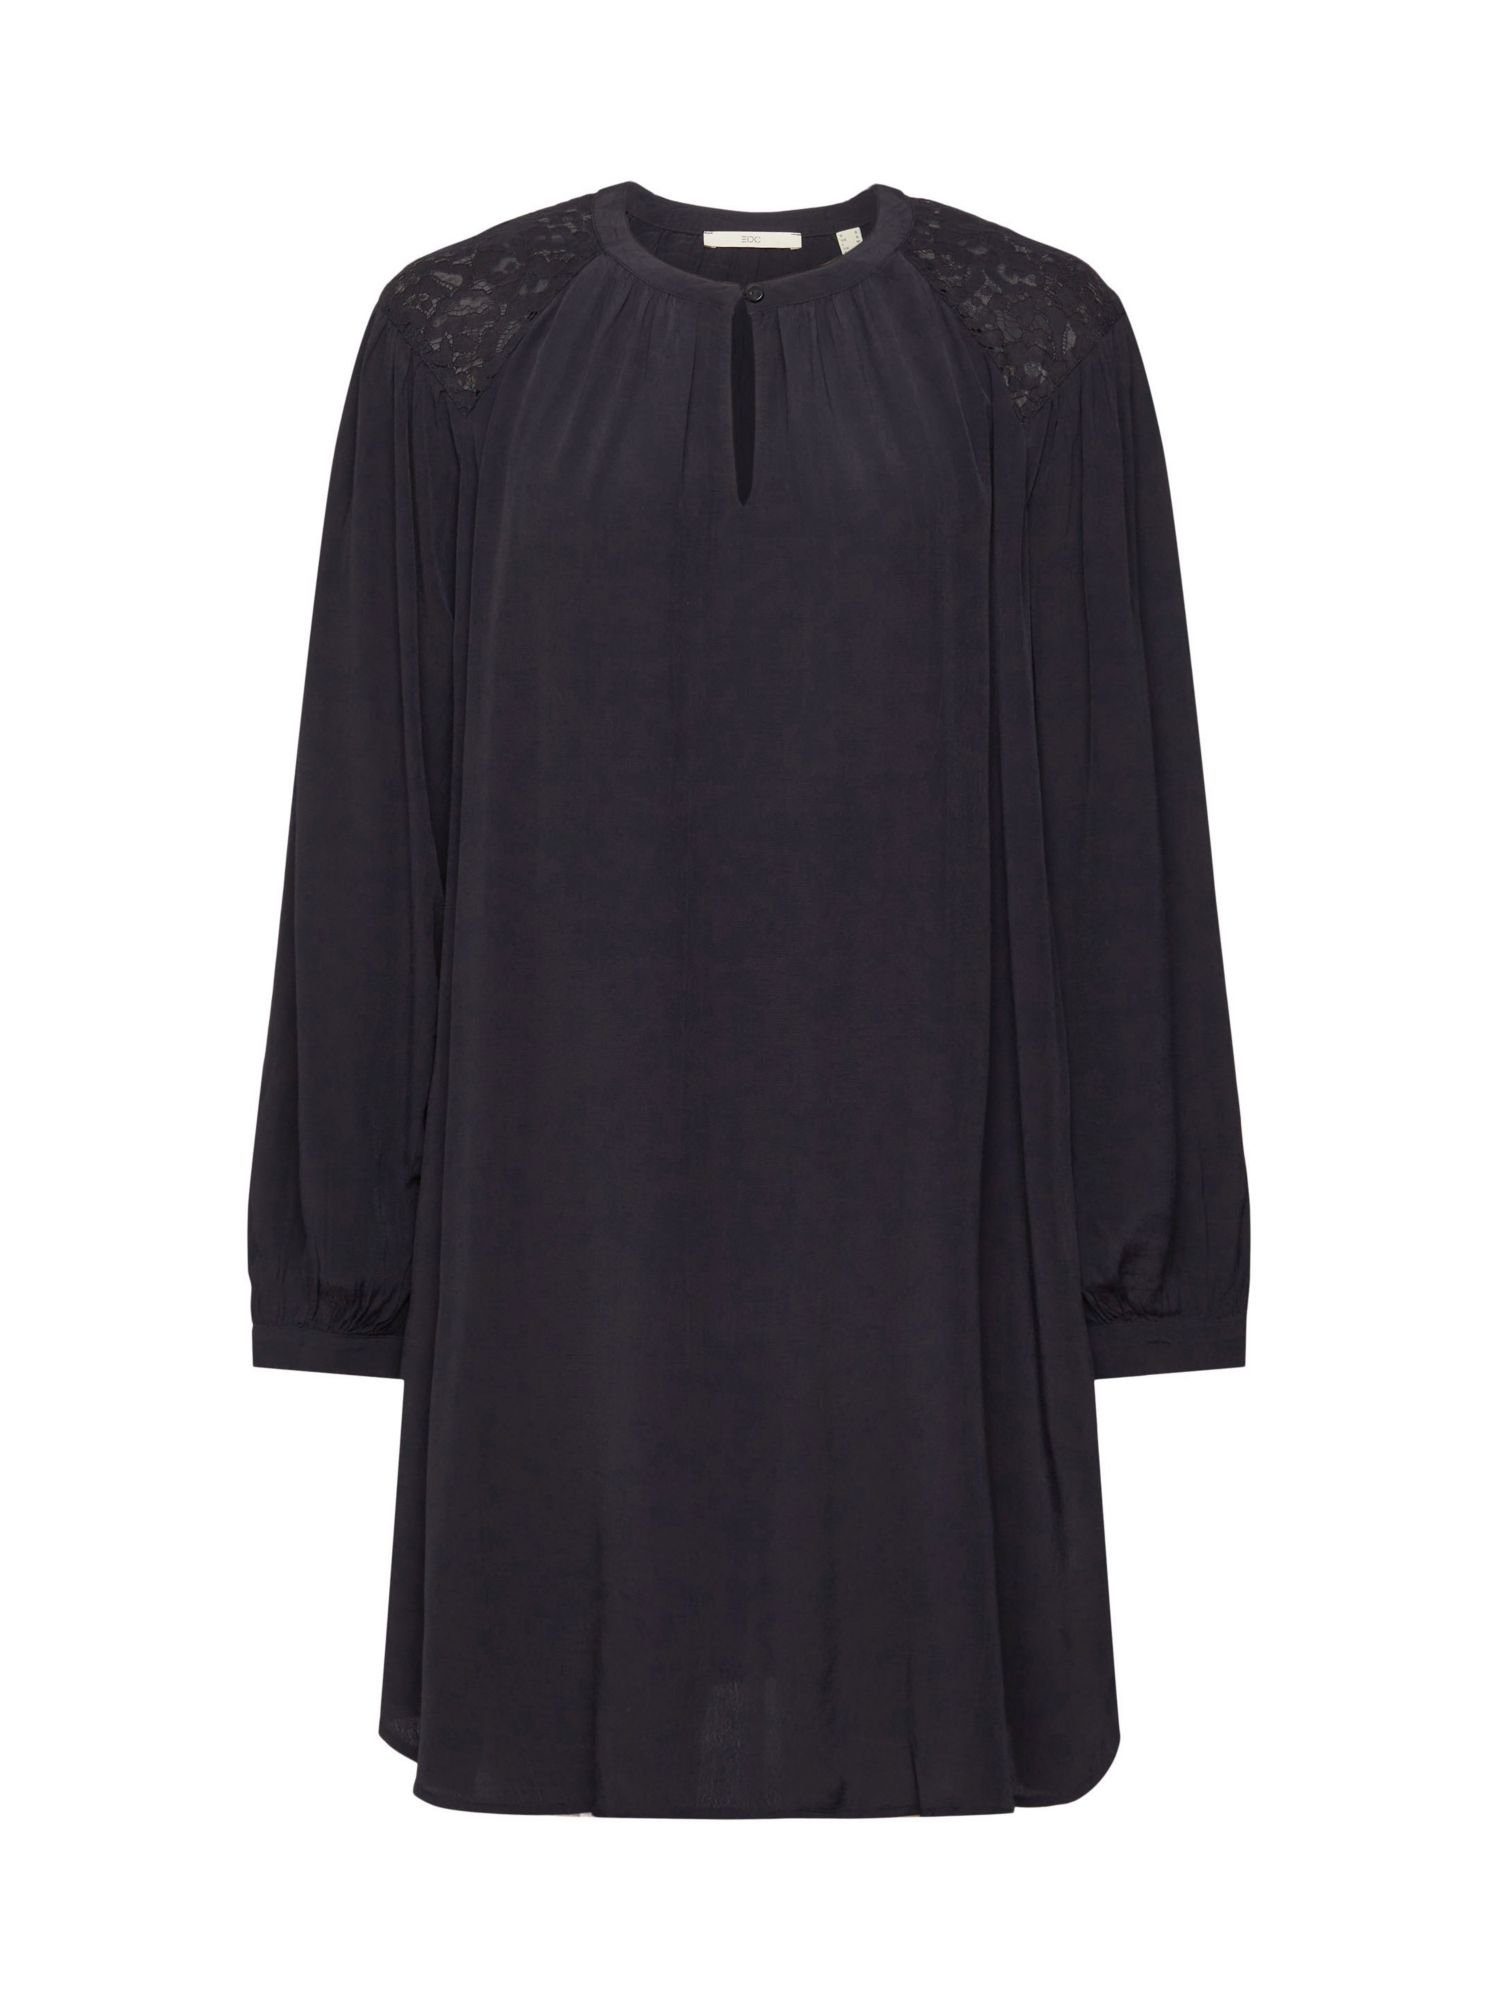 Esprit BLACK by Minikleid Kleid edc Spitzendetails mit